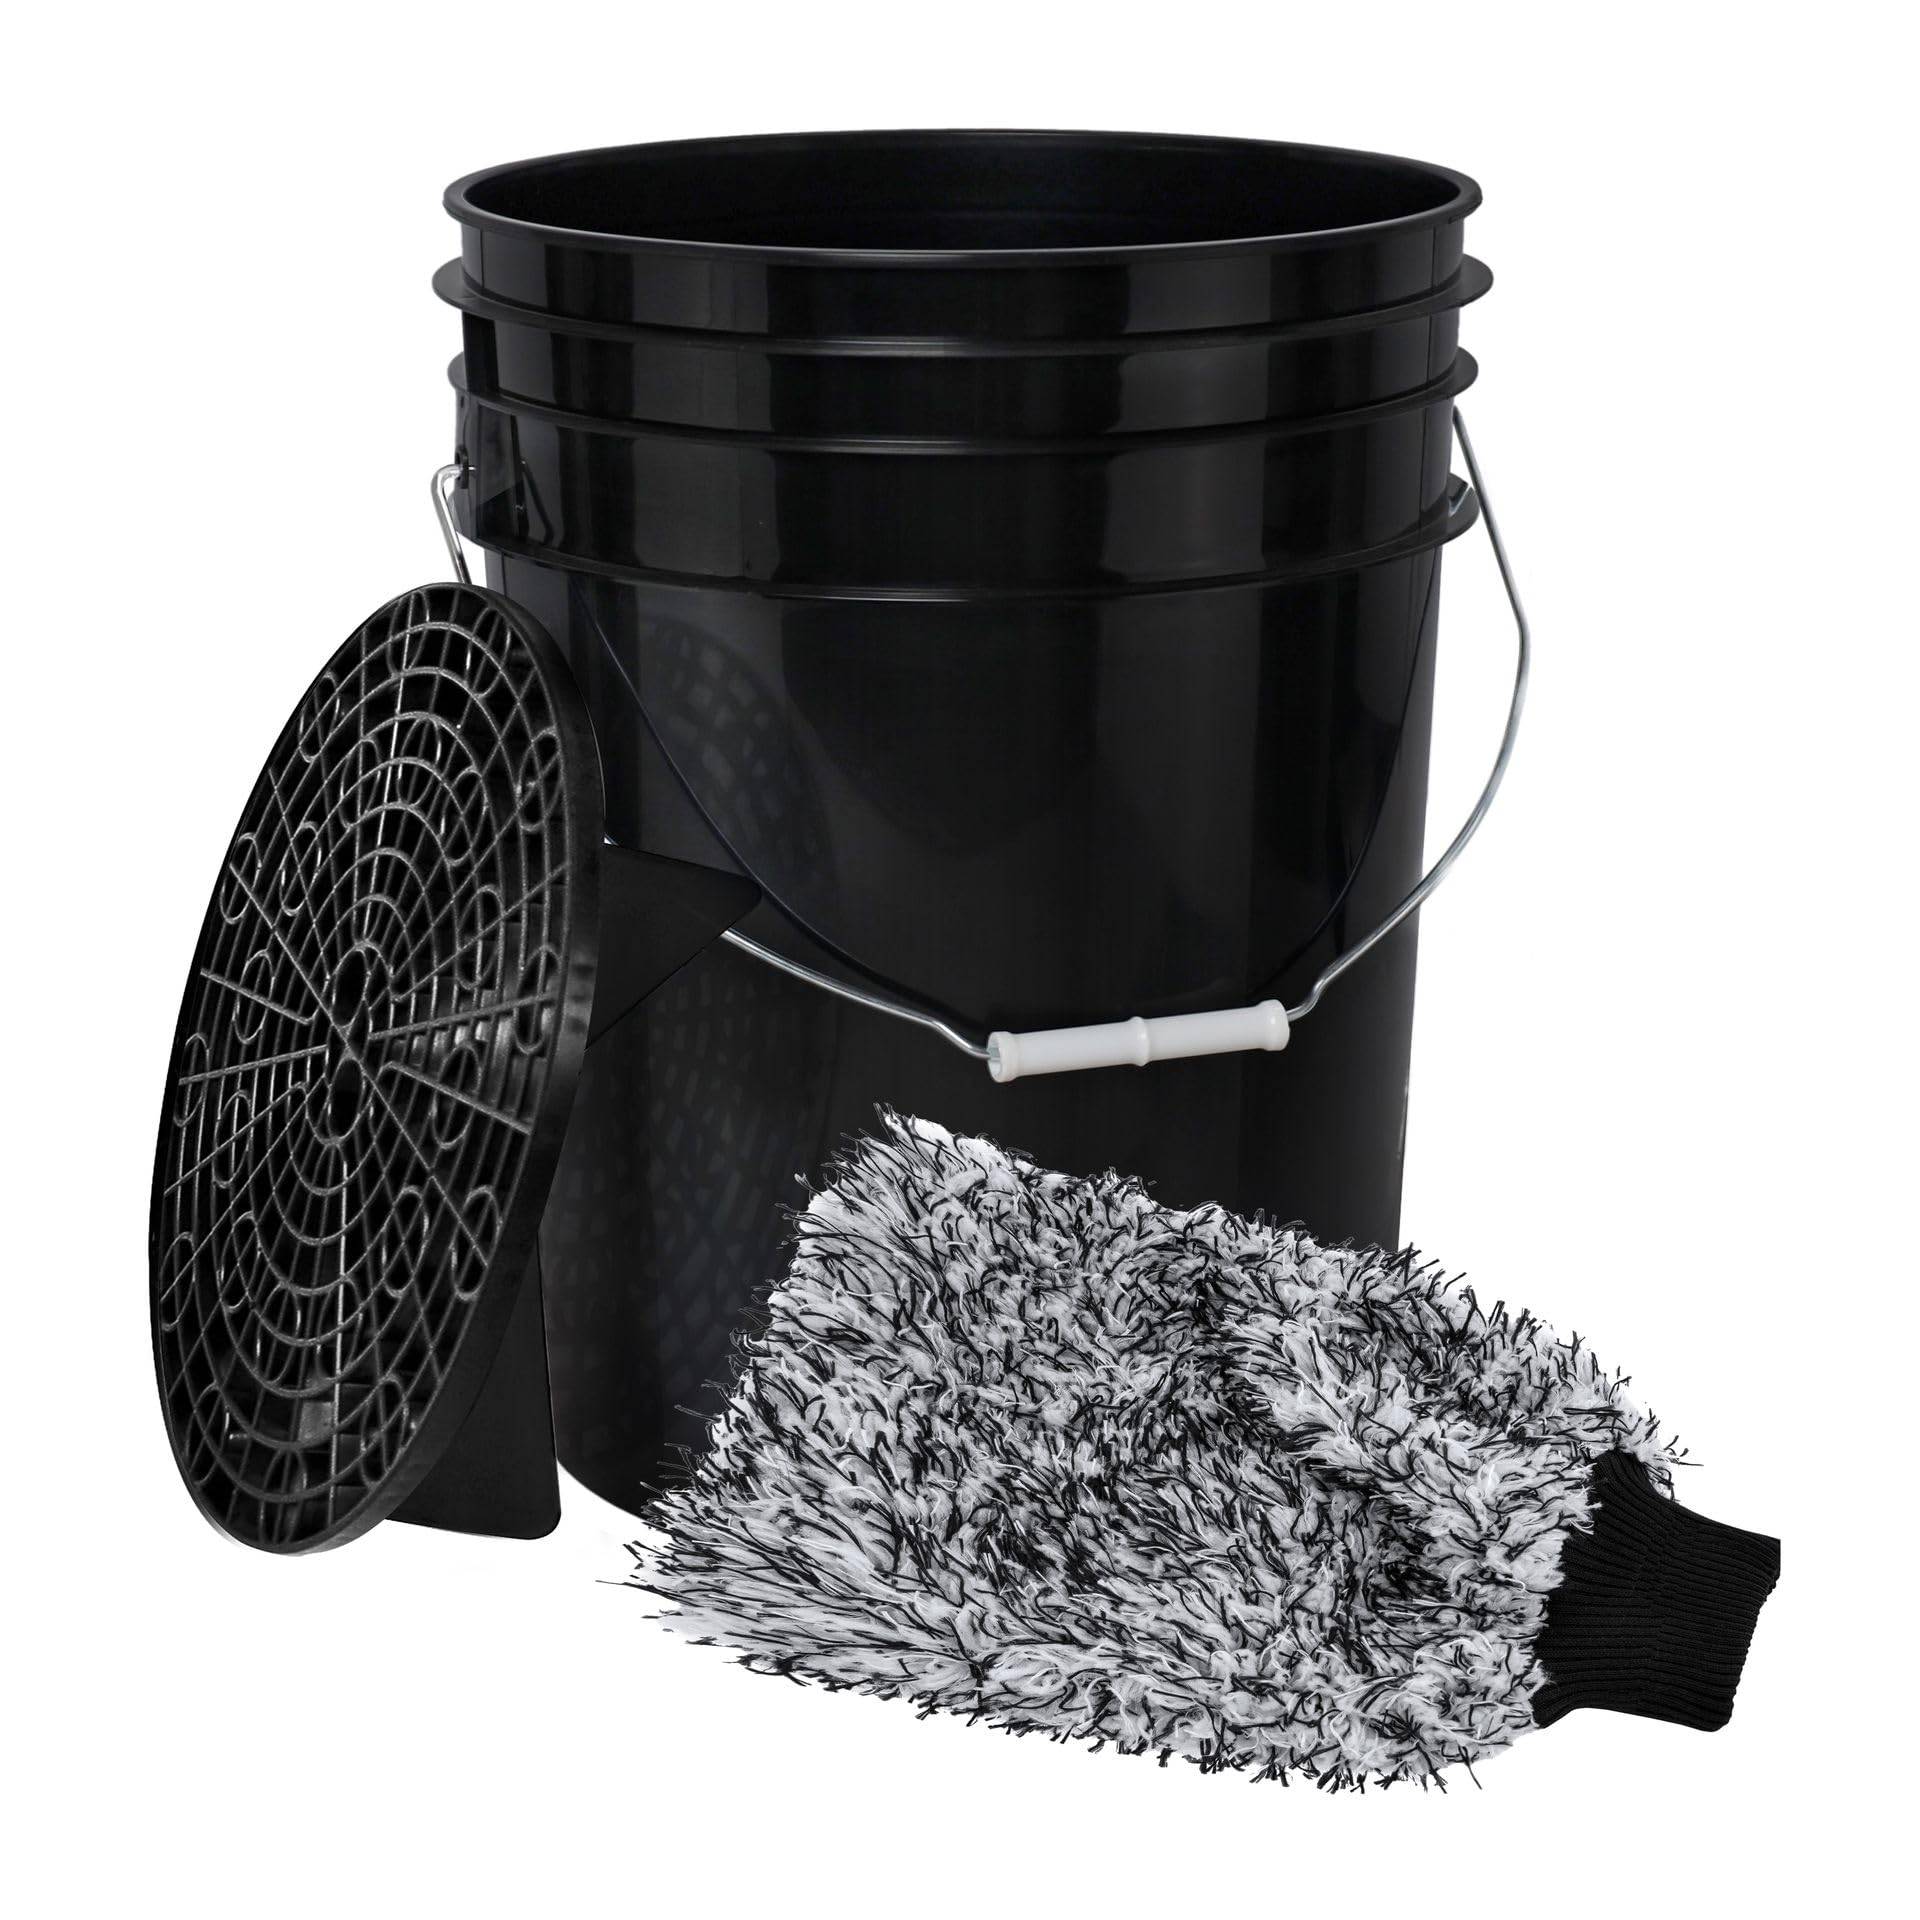 BenBow Autowasch-Set: Wascheimer 20 Liter mit Schmutzsieb und Auto-Waschhandschuh - ideal für kratzerfreie Reinigung von Fahrzeugen und Motorräder - vielseitig einsetzbar von BenBow